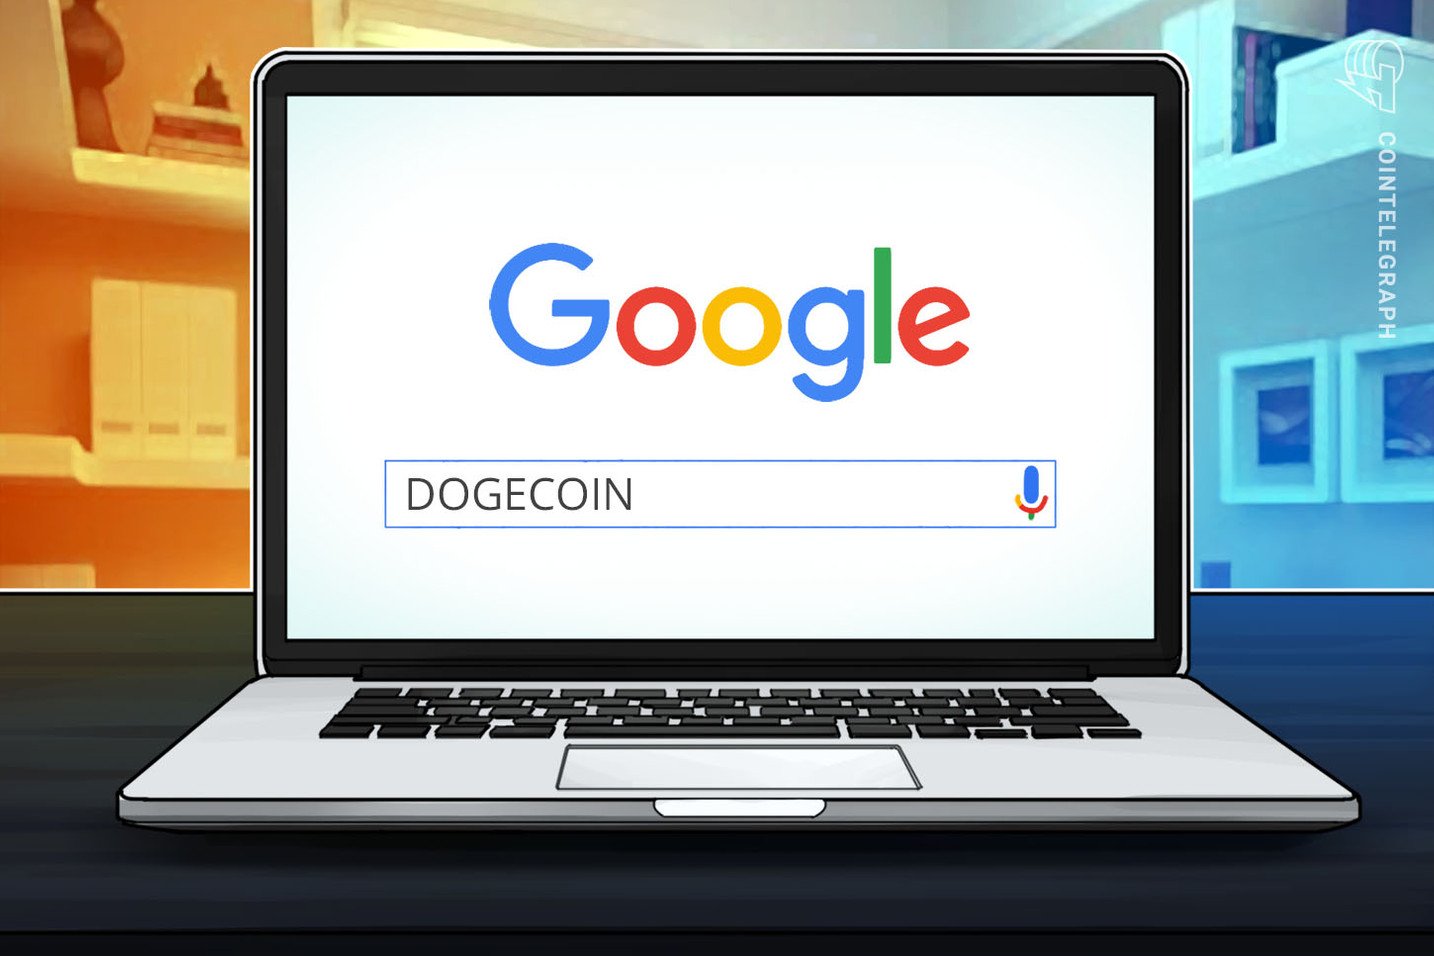 Premieră pe Google! Dogecoin este mai căutată decât Bitcoin